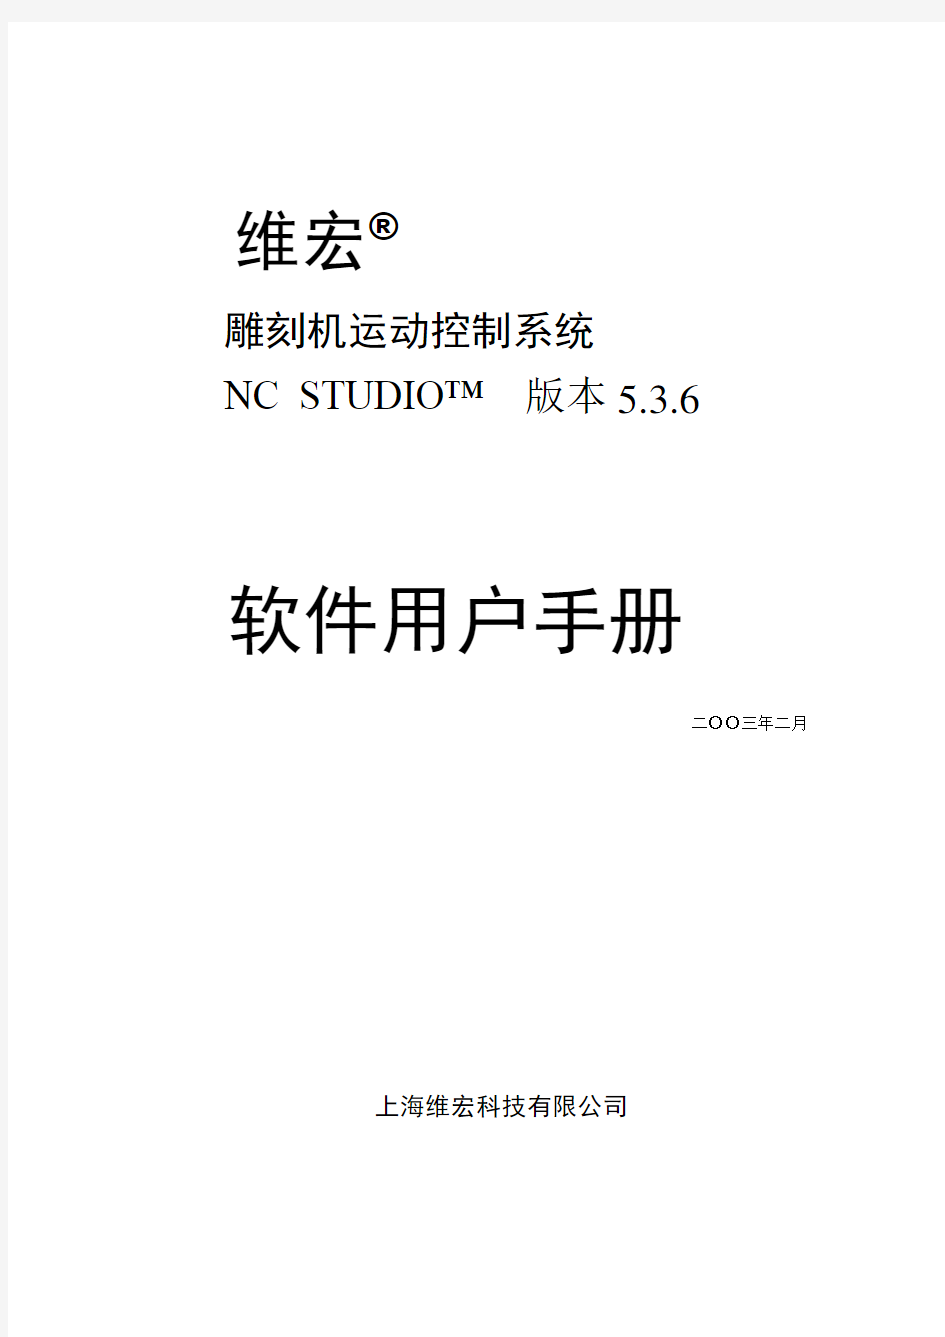 维宏数控运动控制系统(中文, V5_3_6 for luoke)用户手册